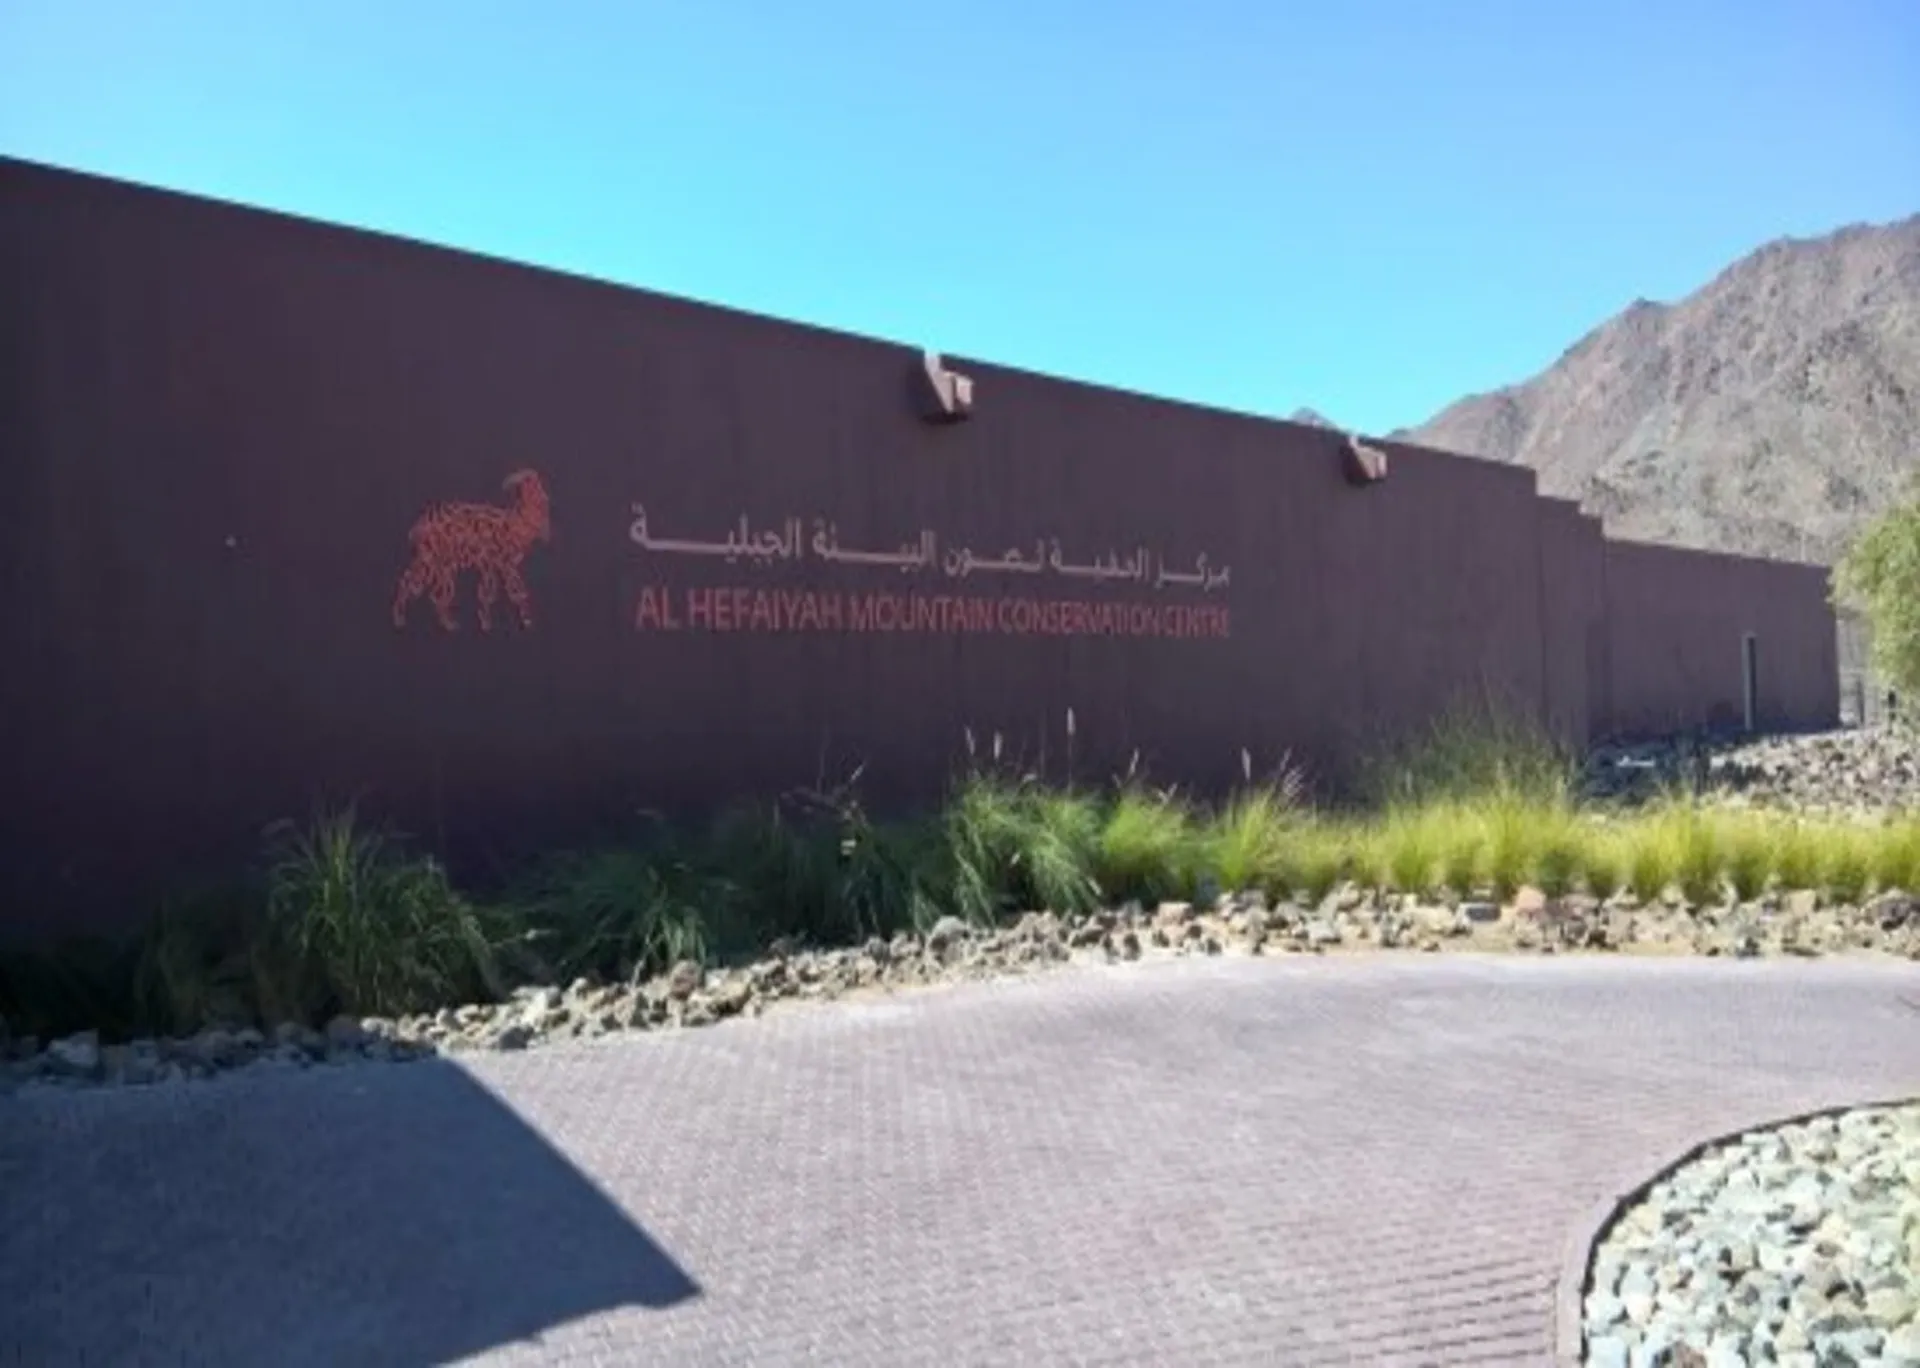 Al Hafiya Mountain Conservation Center